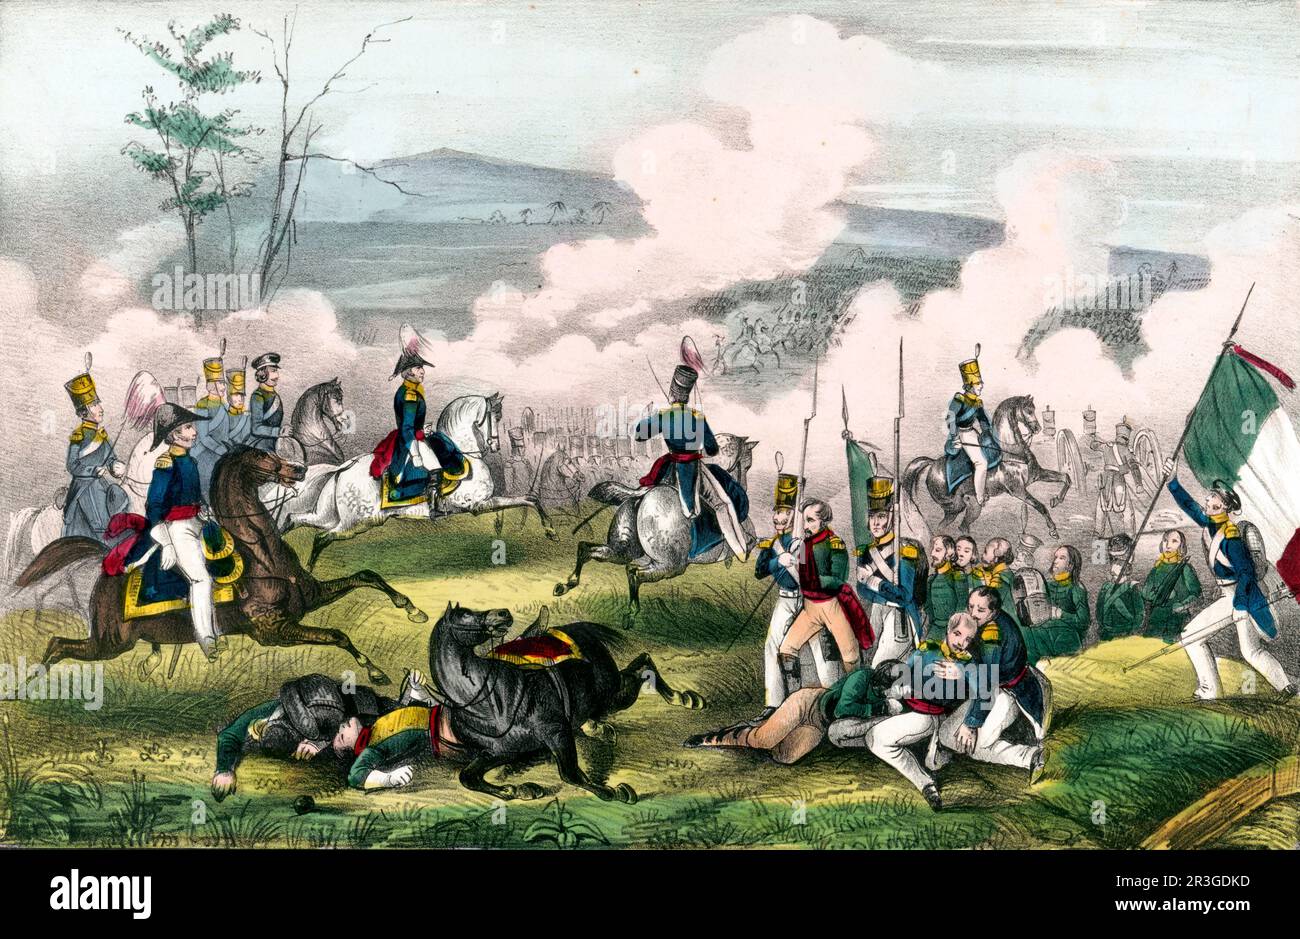 8 maggio 1846 - Battaglia di Palo Alto, la prima battaglia della guerra messicana americana. Foto Stock